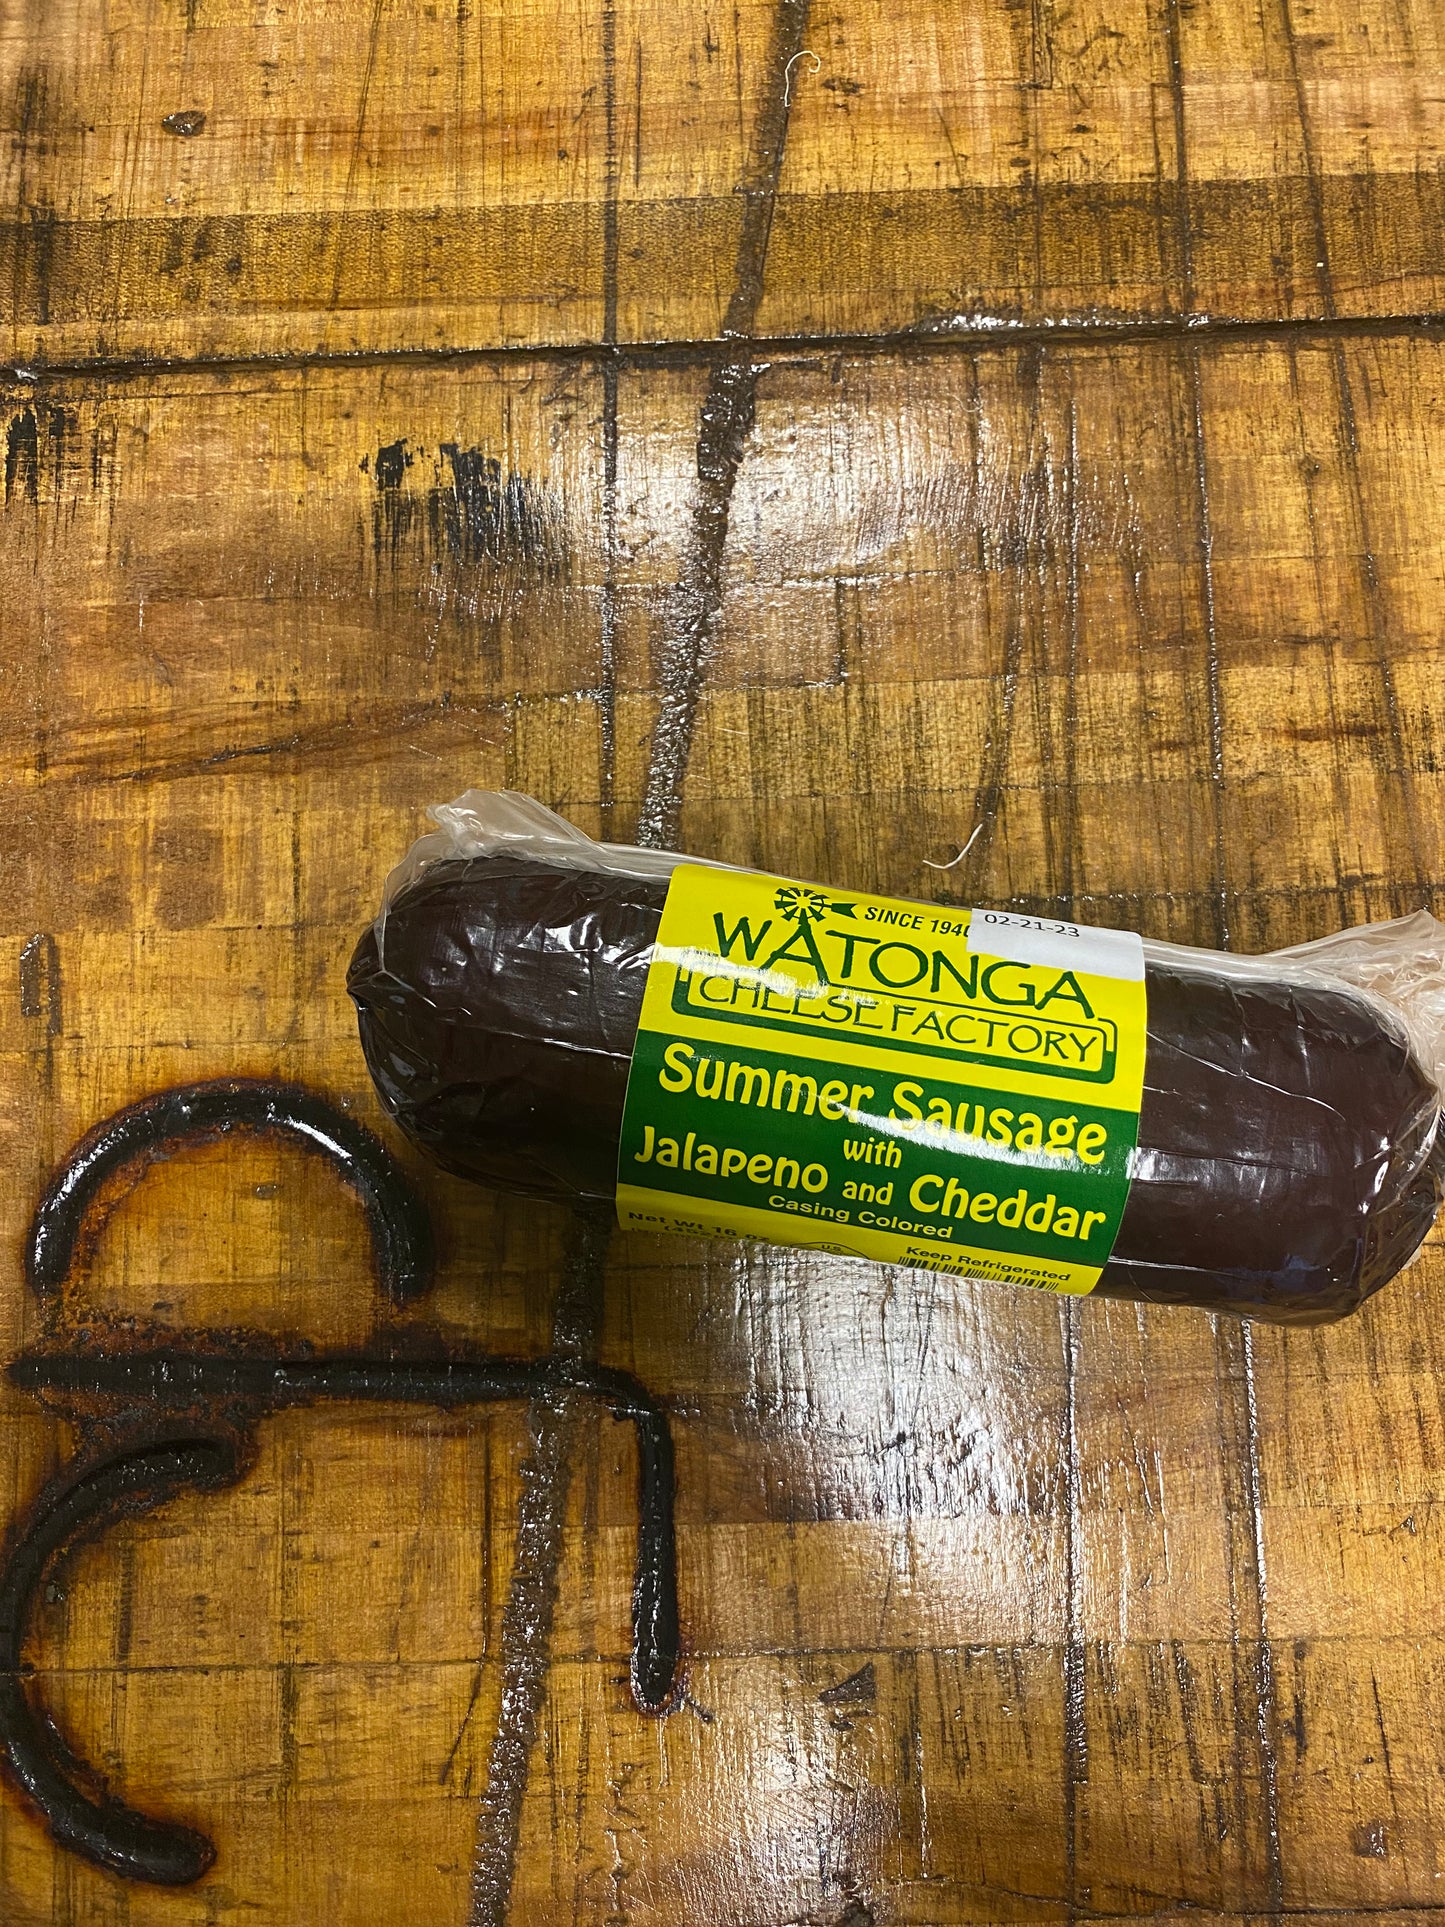 Watonga Summer Sausage with Jalapeño and Cheddar